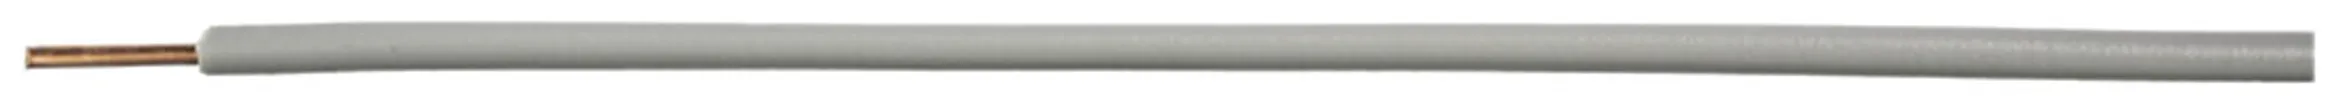 Filo N H07Z1-U senza alogeno 1.5mm² 450/750V grigio Cca 